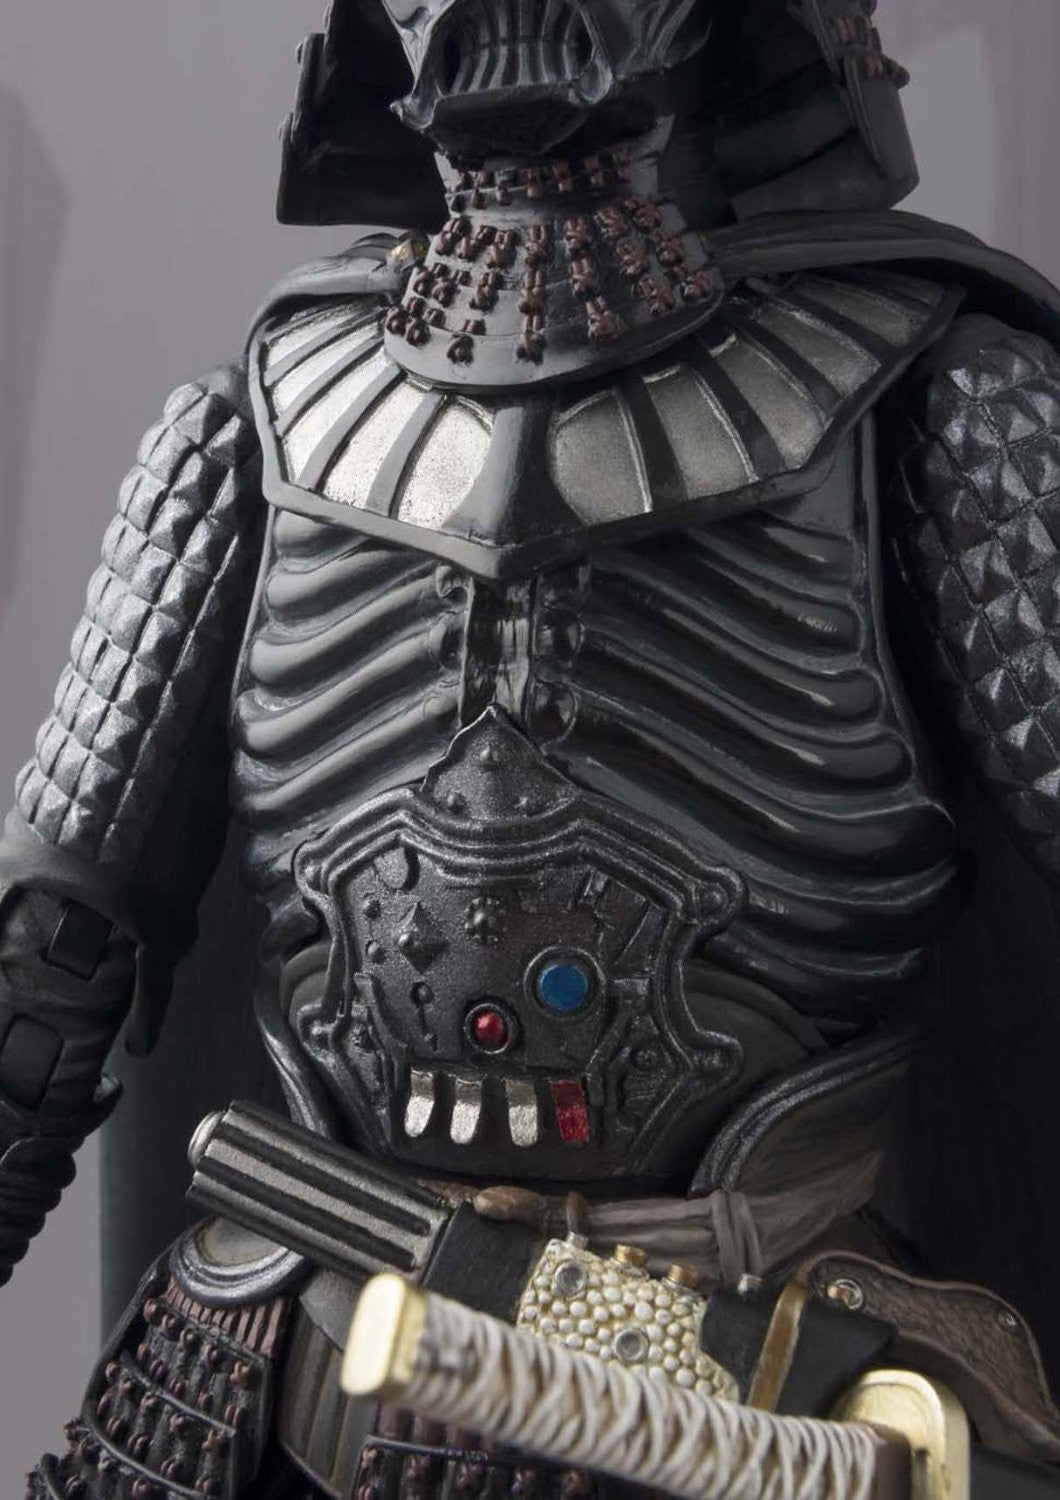 Movie Realization Star Wars Samurai General Darth Vader (Death Star Crest)